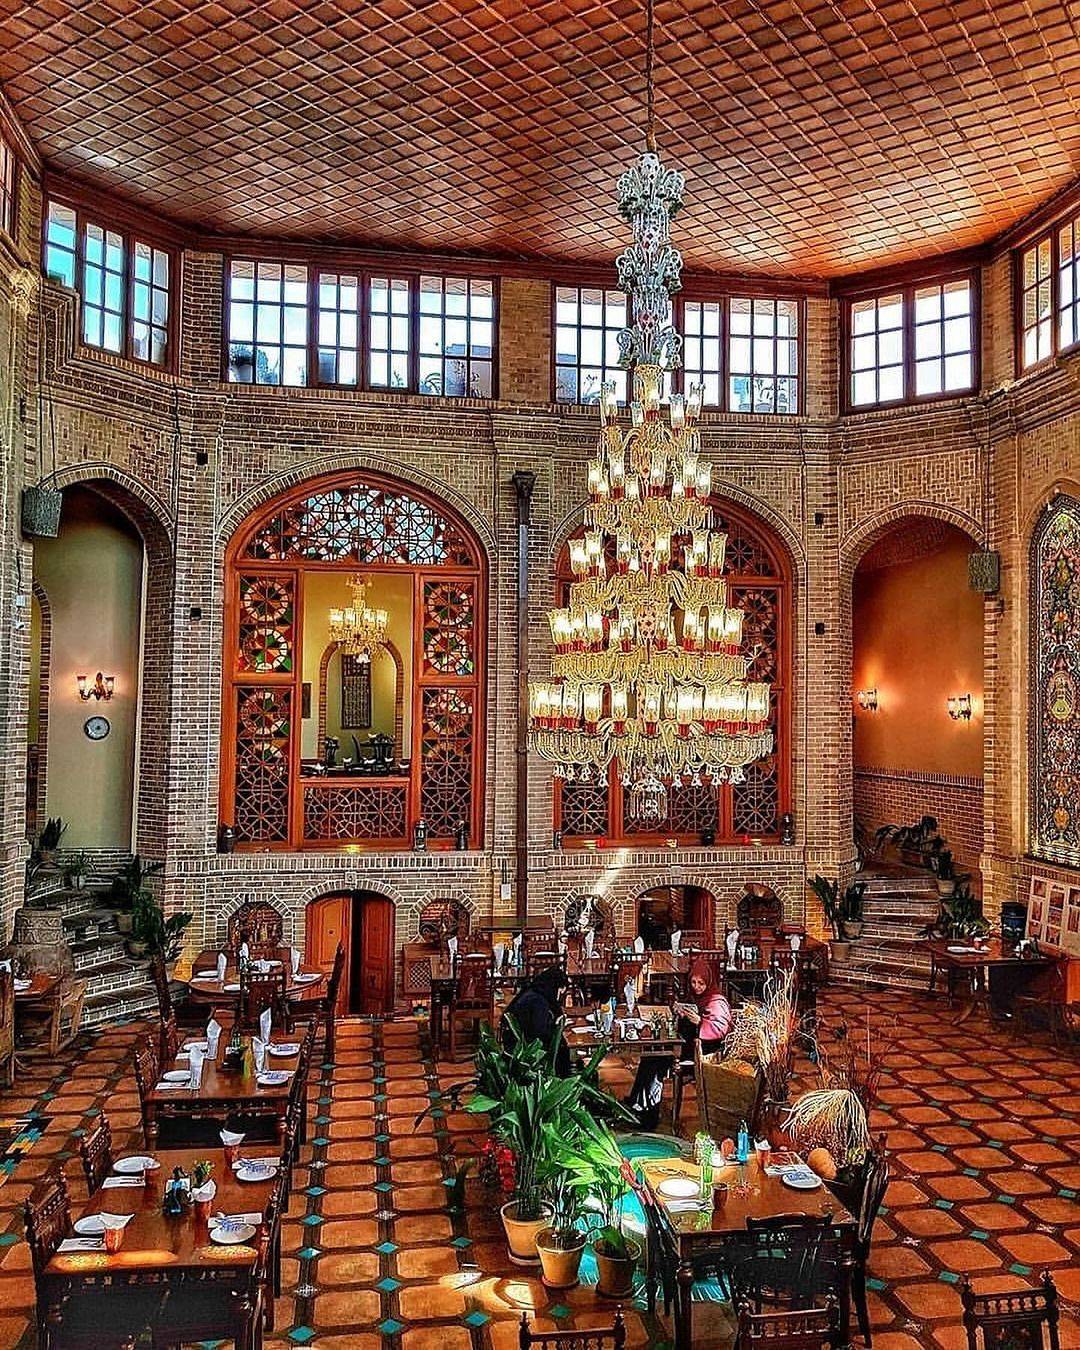 یکی از زیباترین رستوران های تهران هستش رستوران .ار.توسط میرزا محمد باقر میزانی ساخته شده است. به دلیل آن که سازنده این | شیش کباب کردستان • درناتریپ ✈️